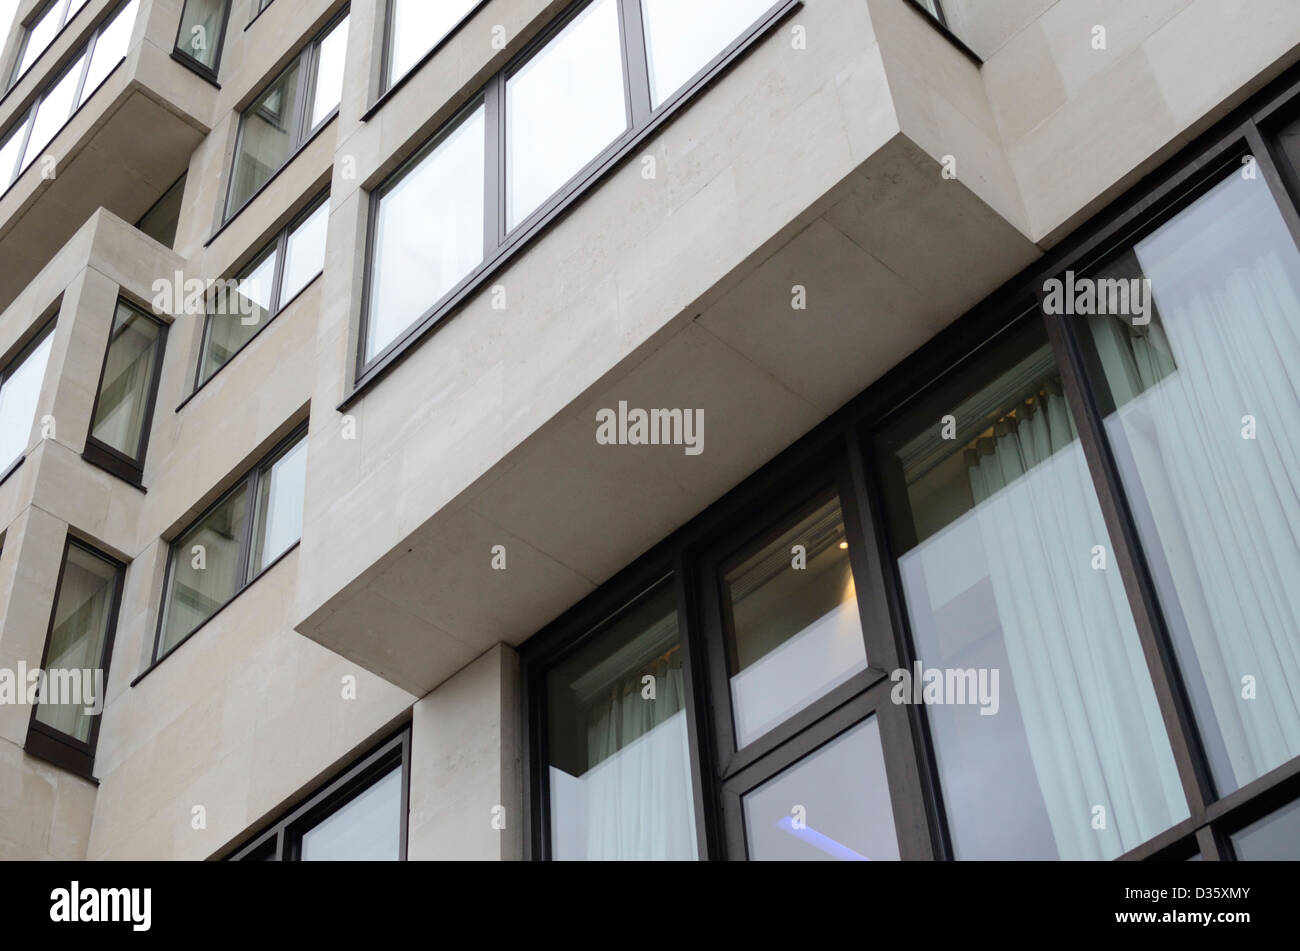 Moderne Hotelgebäude mit vorstehenden Abschnitte, London, UK Stockfoto